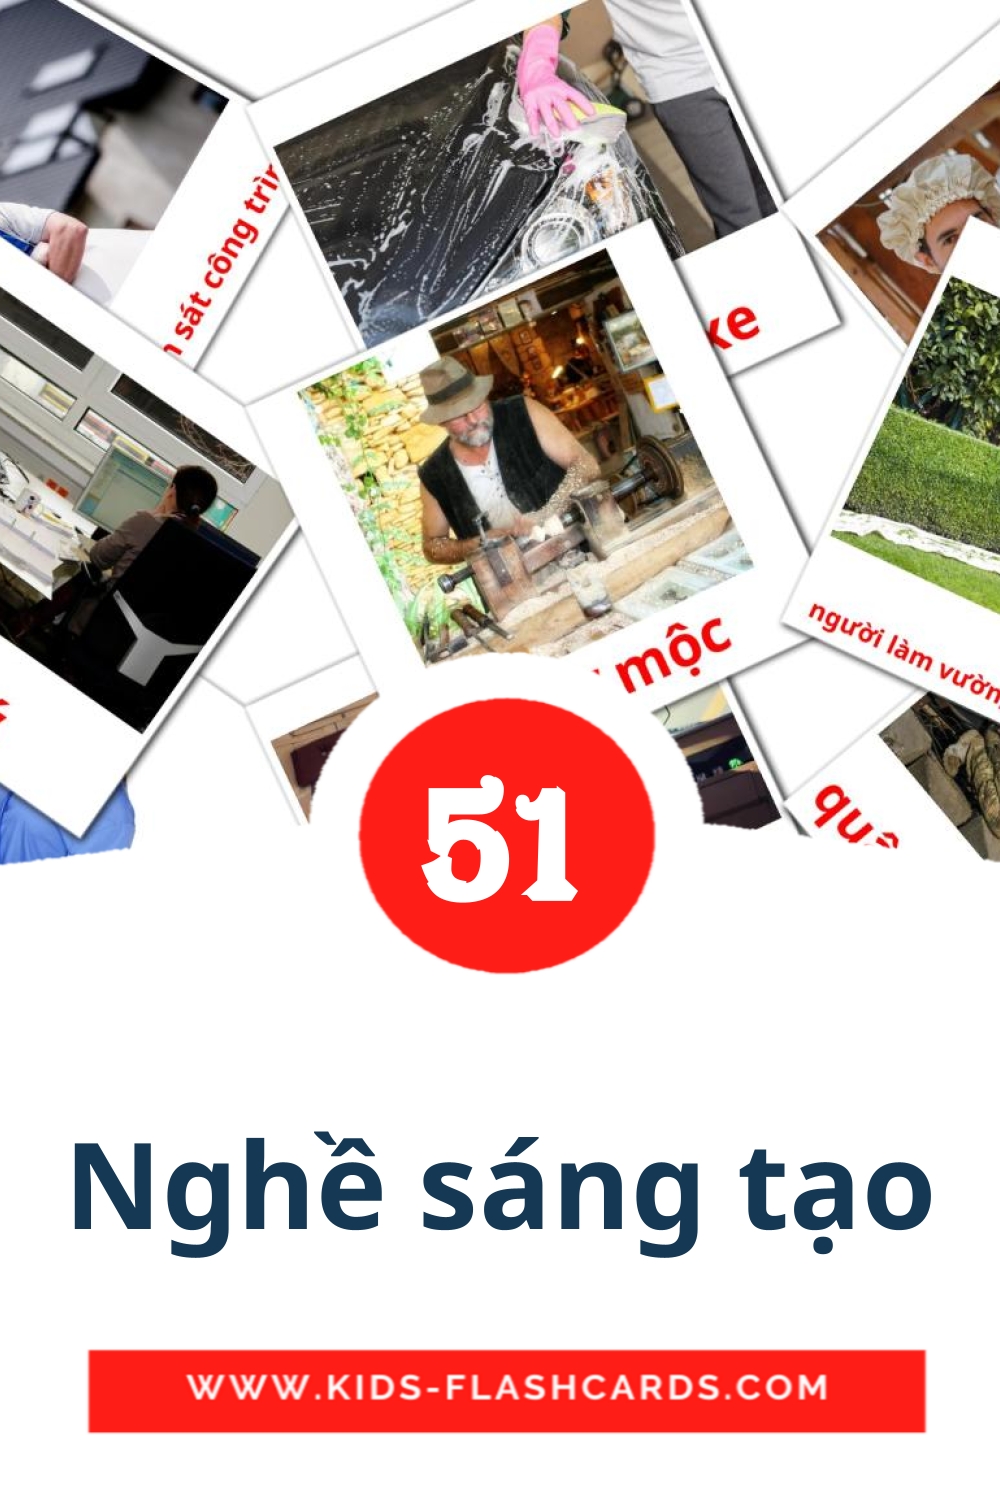 51 tarjetas didacticas de Nghề sáng tạo para el jardín de infancia en vietnamita